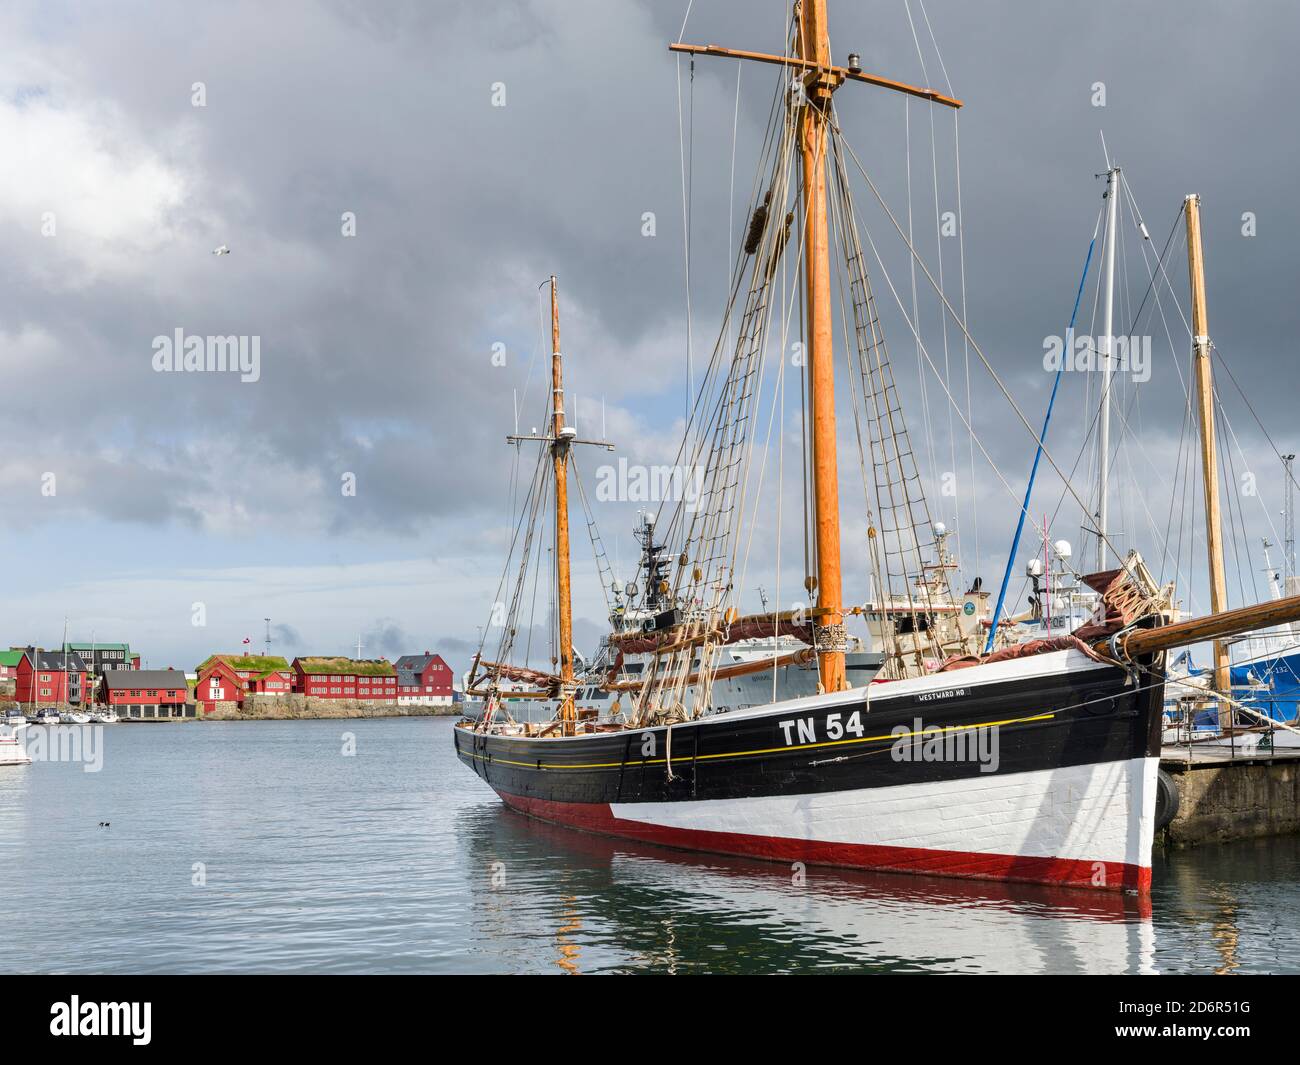 Le port ouest (Vestara Vag) avec un voilier traditionnel. Torshavn (Thorshavn) la capitale des îles Féroé sur l'île de Strymoy Banque D'Images